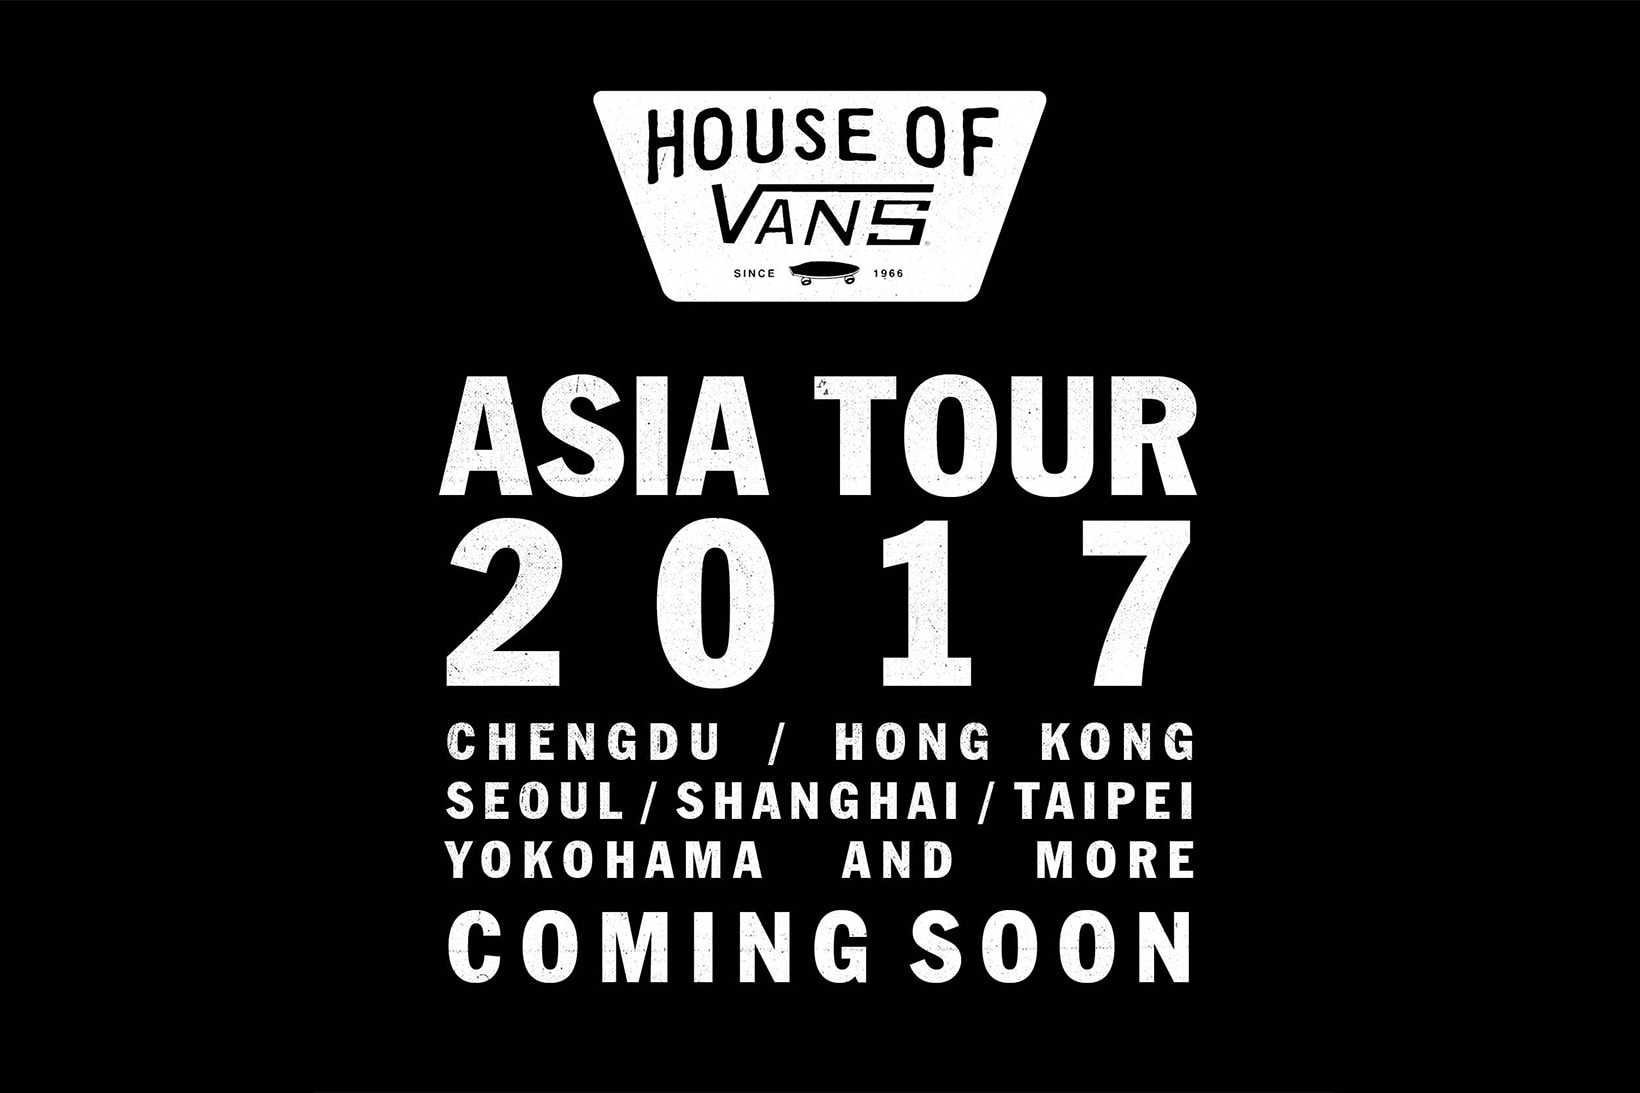 House of Vans 亞洲區巡迴活動將於今月開啟